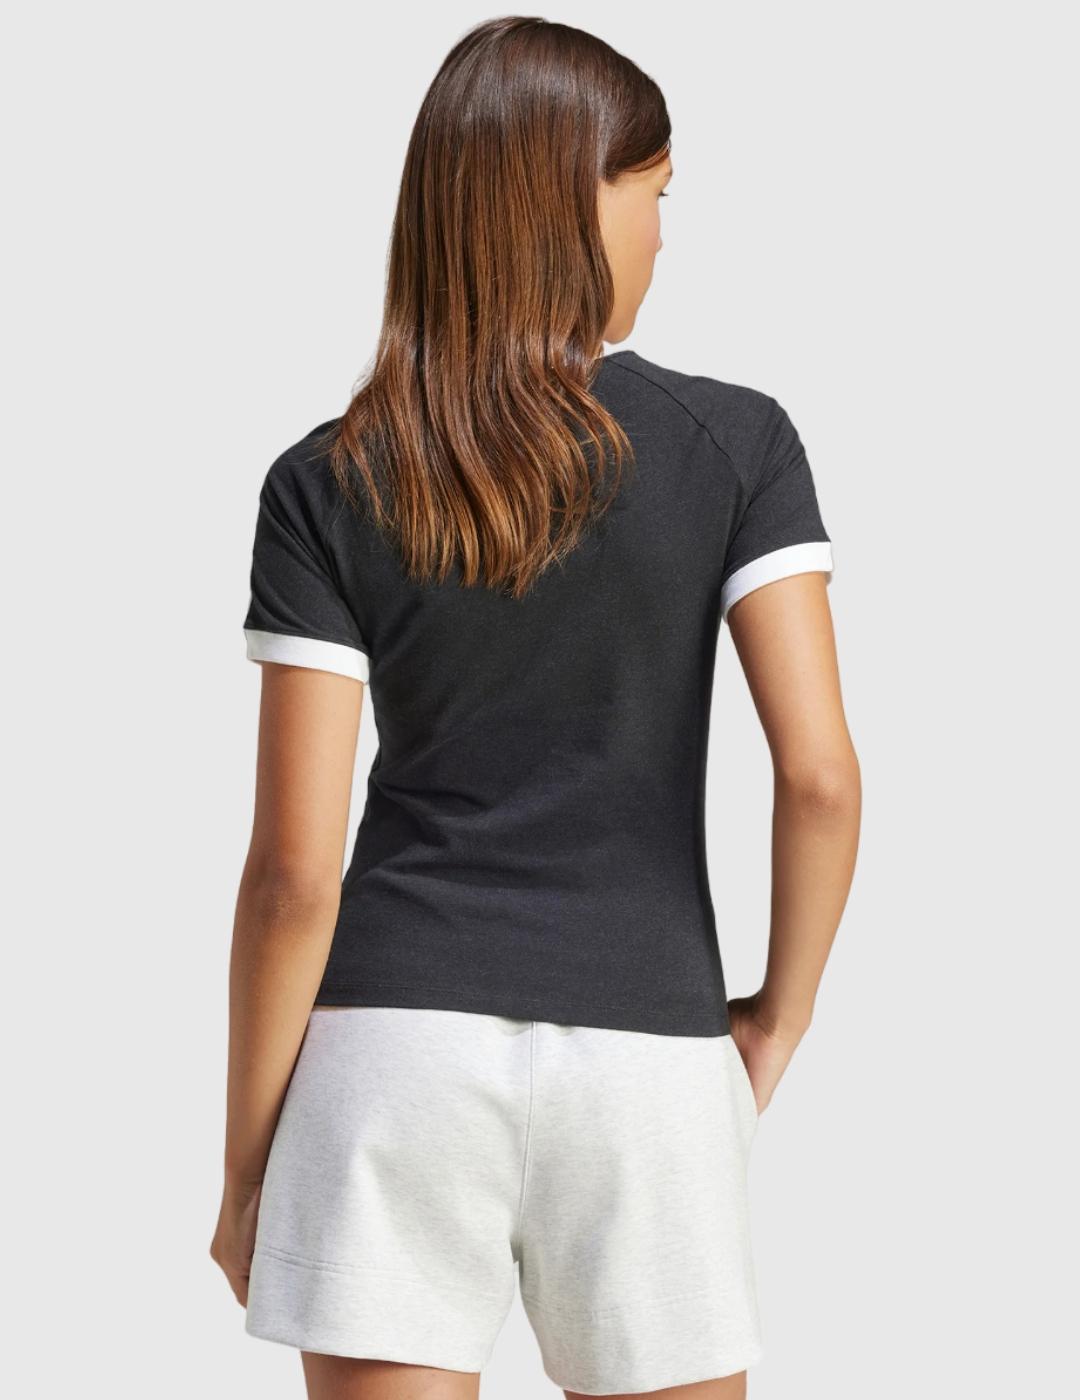 Camiseta Adidas Gris/Blanco Mujer